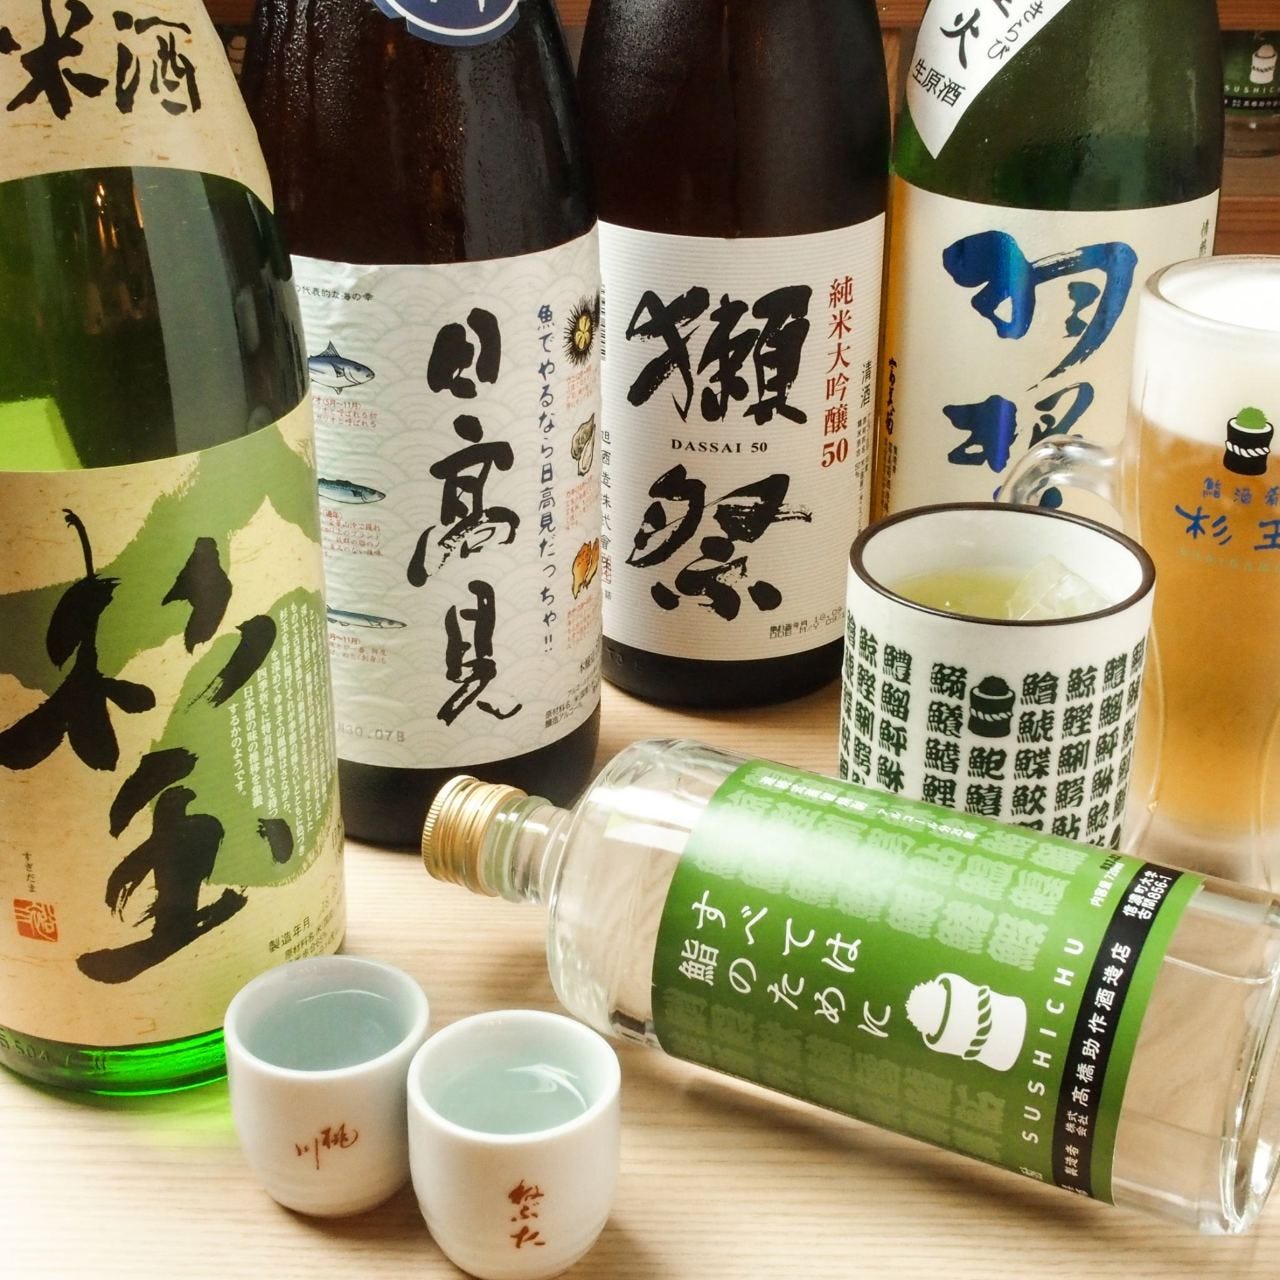 鮨・酒・肴 杉玉 三軒茶屋